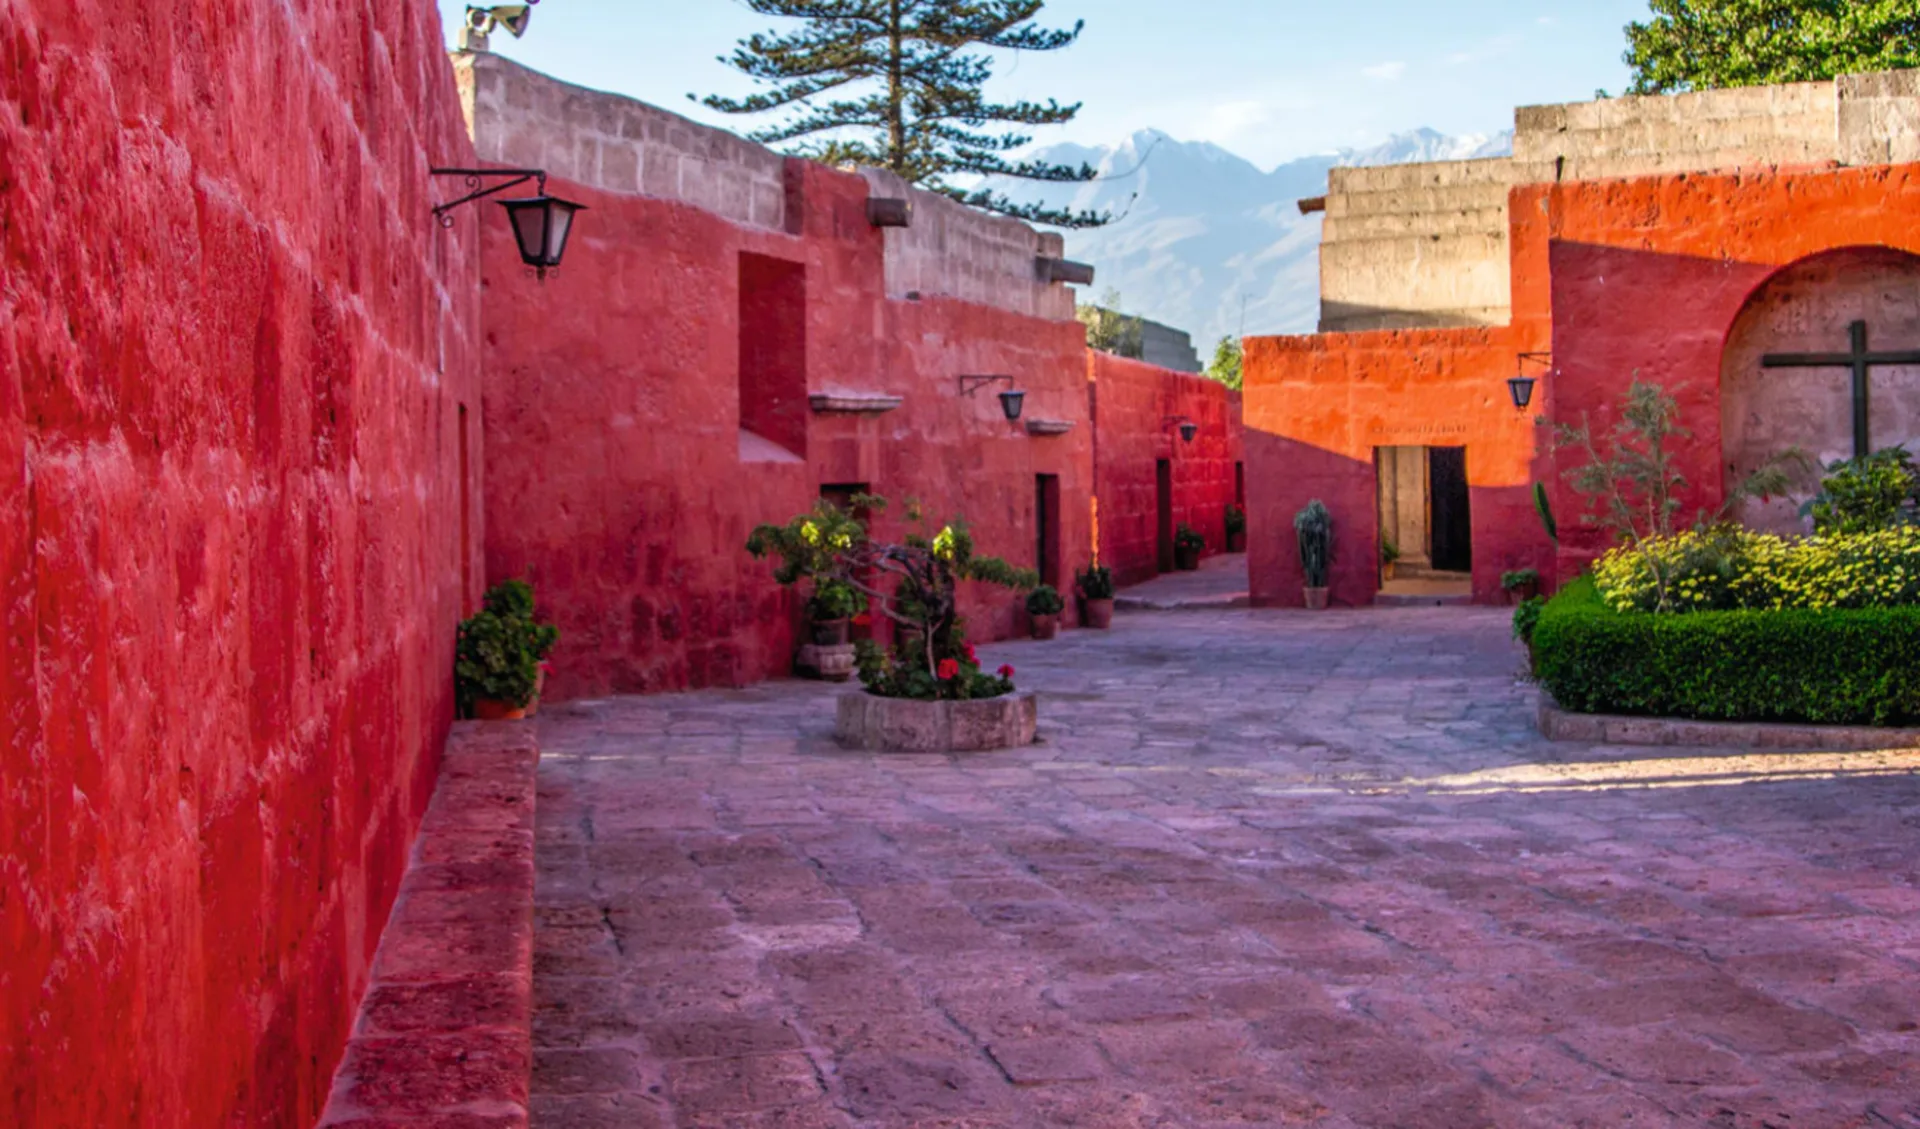 Lima - Nazca - Arequipa: Peru - Santa Catalina - farbige Häuser